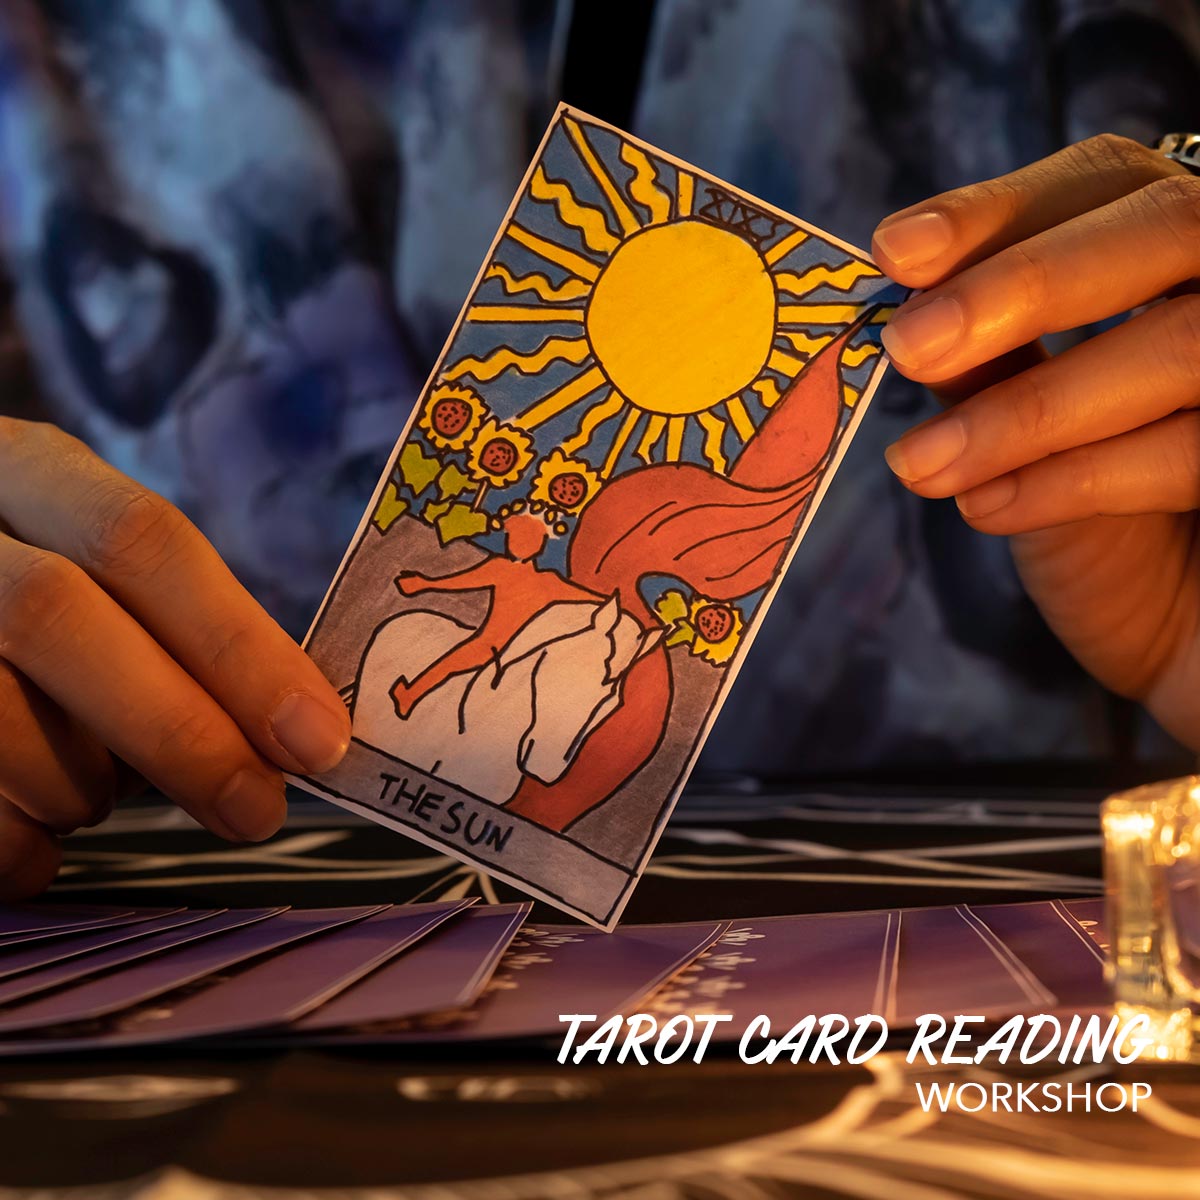 塔羅牌占卜工作坊 Tarot Card Reading Workshop